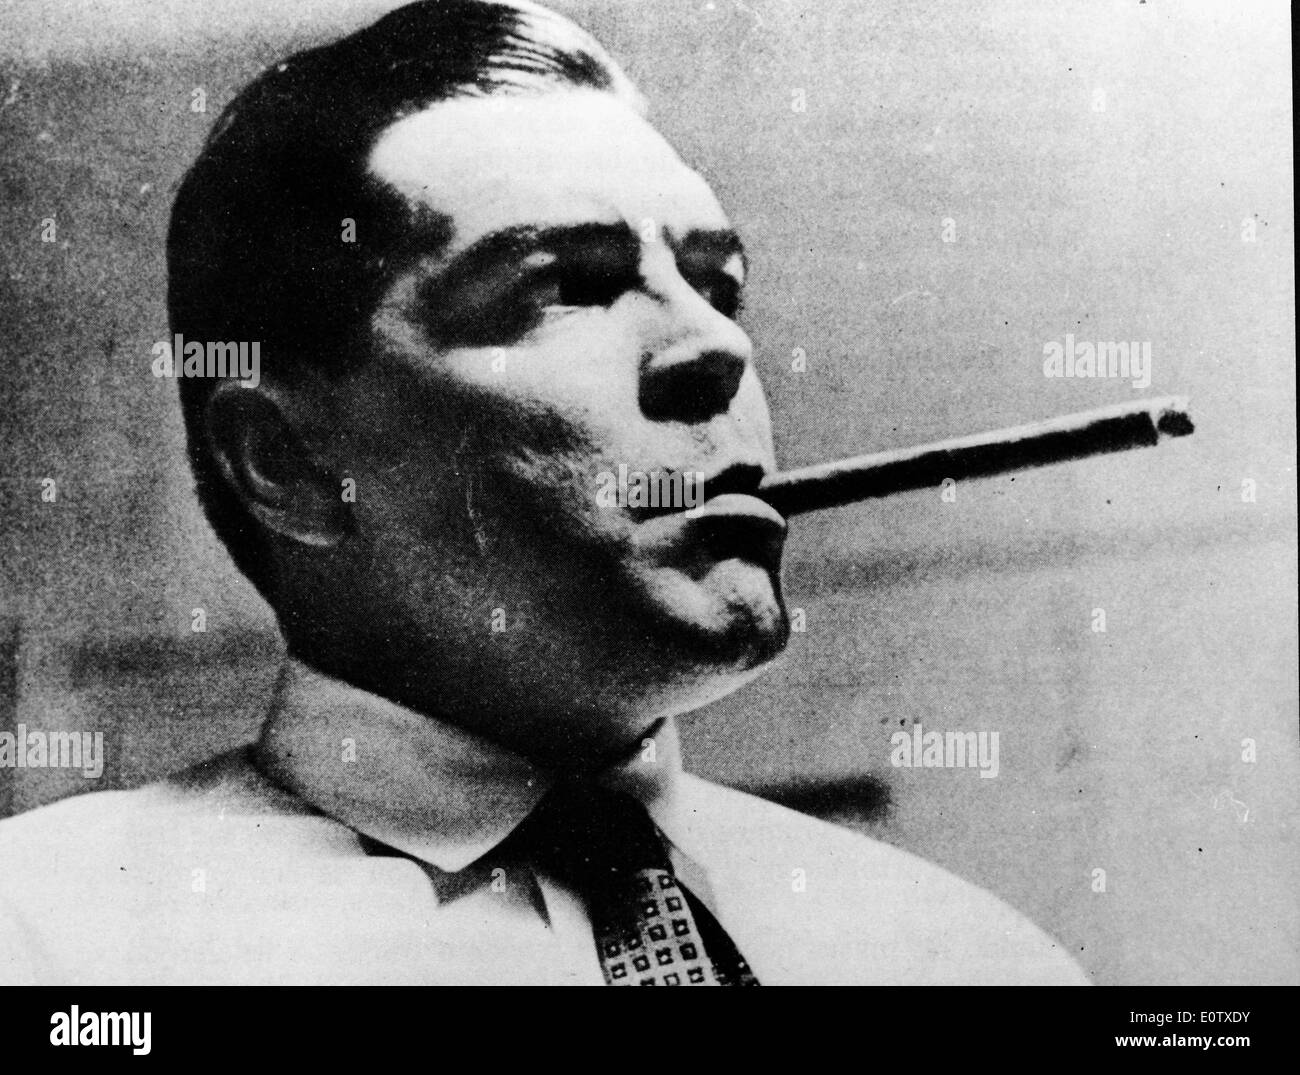 Kubanischen Revolutionär Che Guevara raucht eine Zigarre Stockfoto